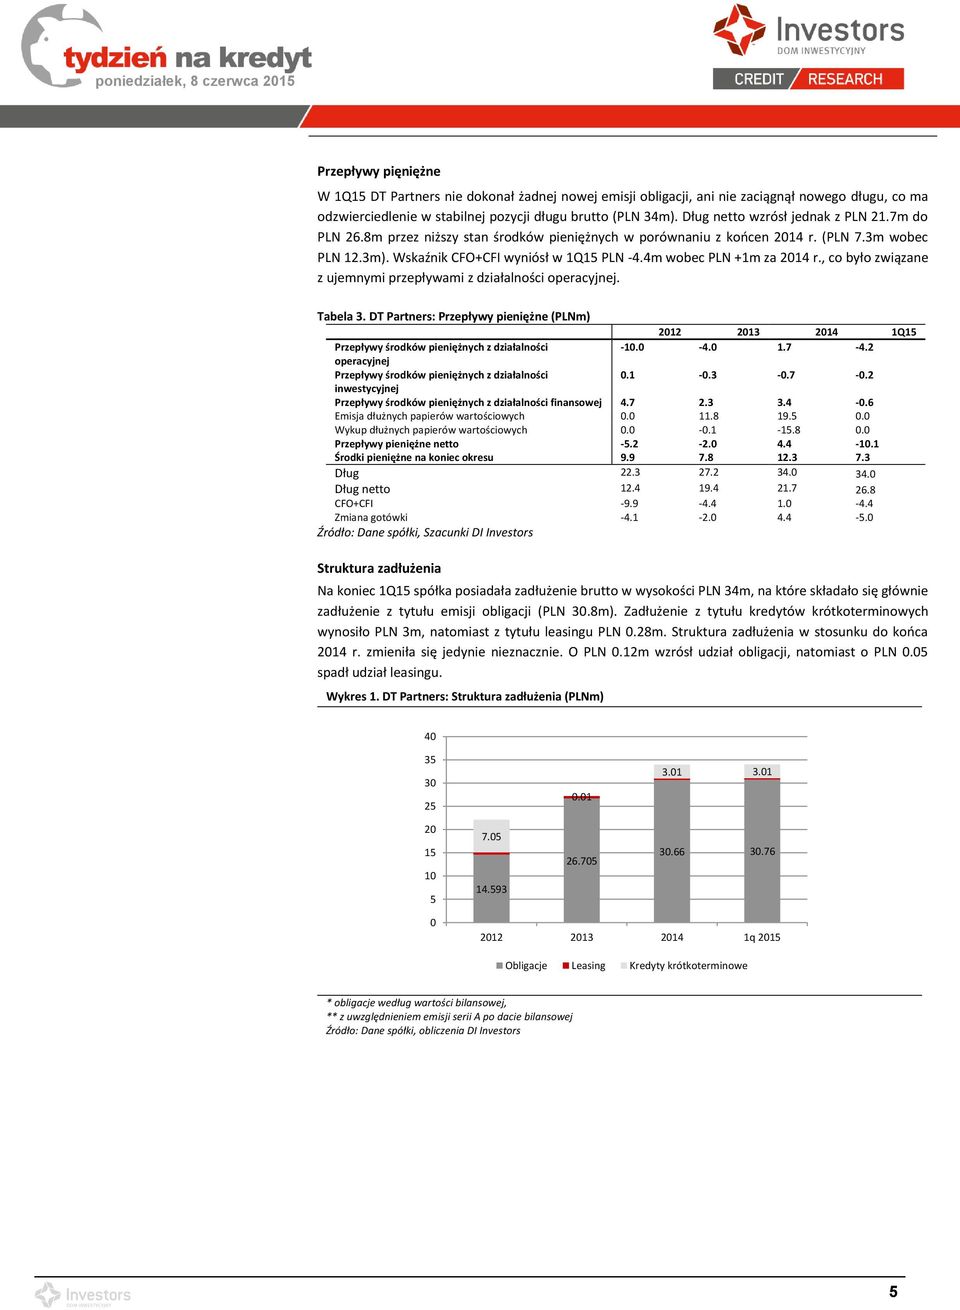 4m wobec PLN +1m za 2014 r., co było związane z ujemnymi przepływami z działalności operacyjnej. Tabela 3.